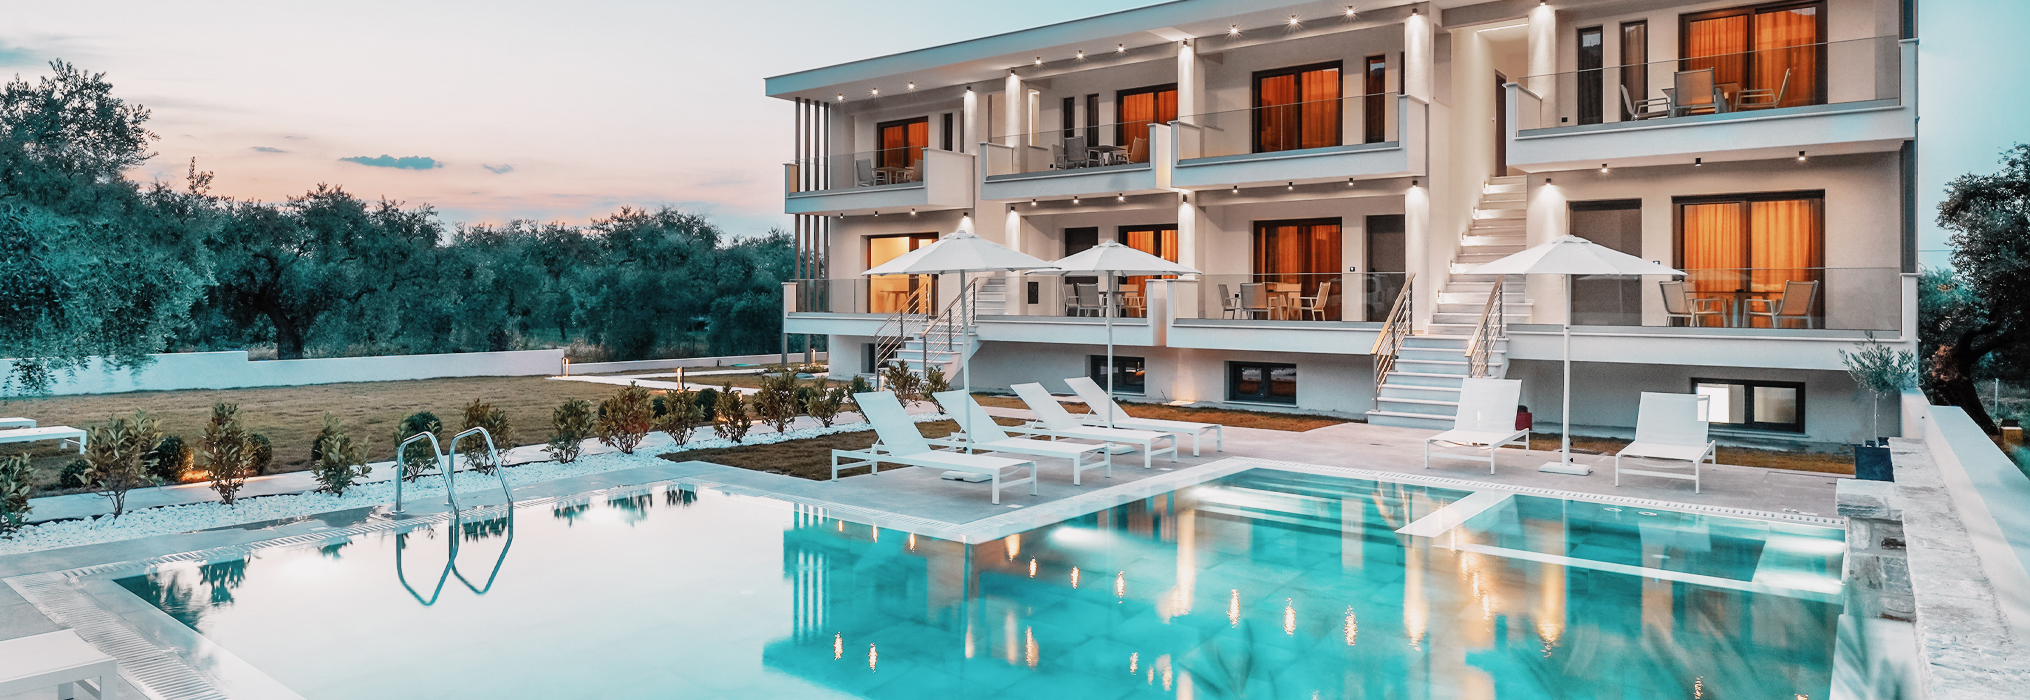 Η πισίνα του Olia Thassos - Luxury Apartments